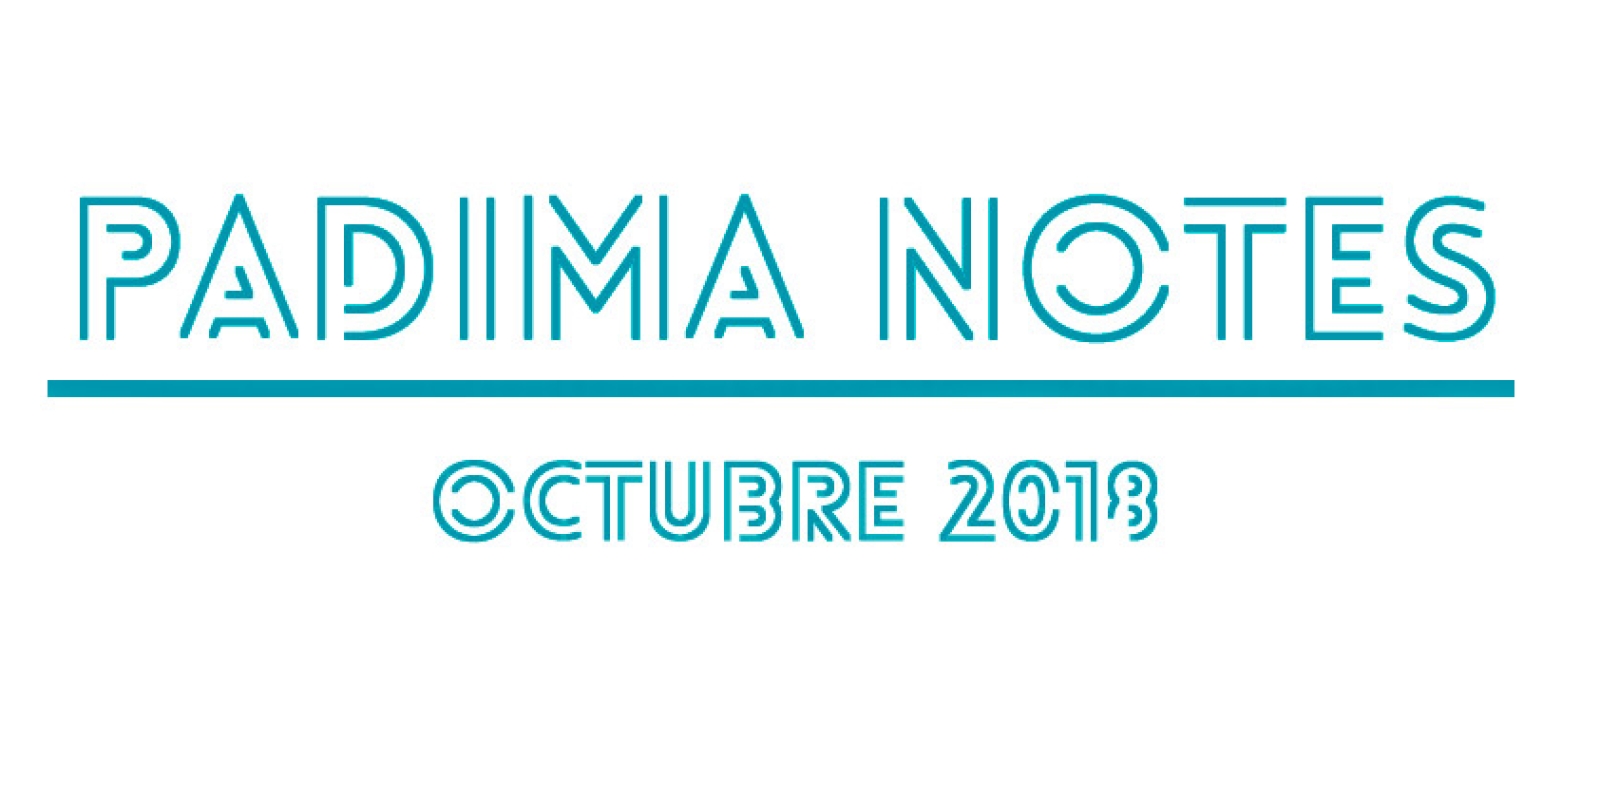 Padima Notes Octubre 2018